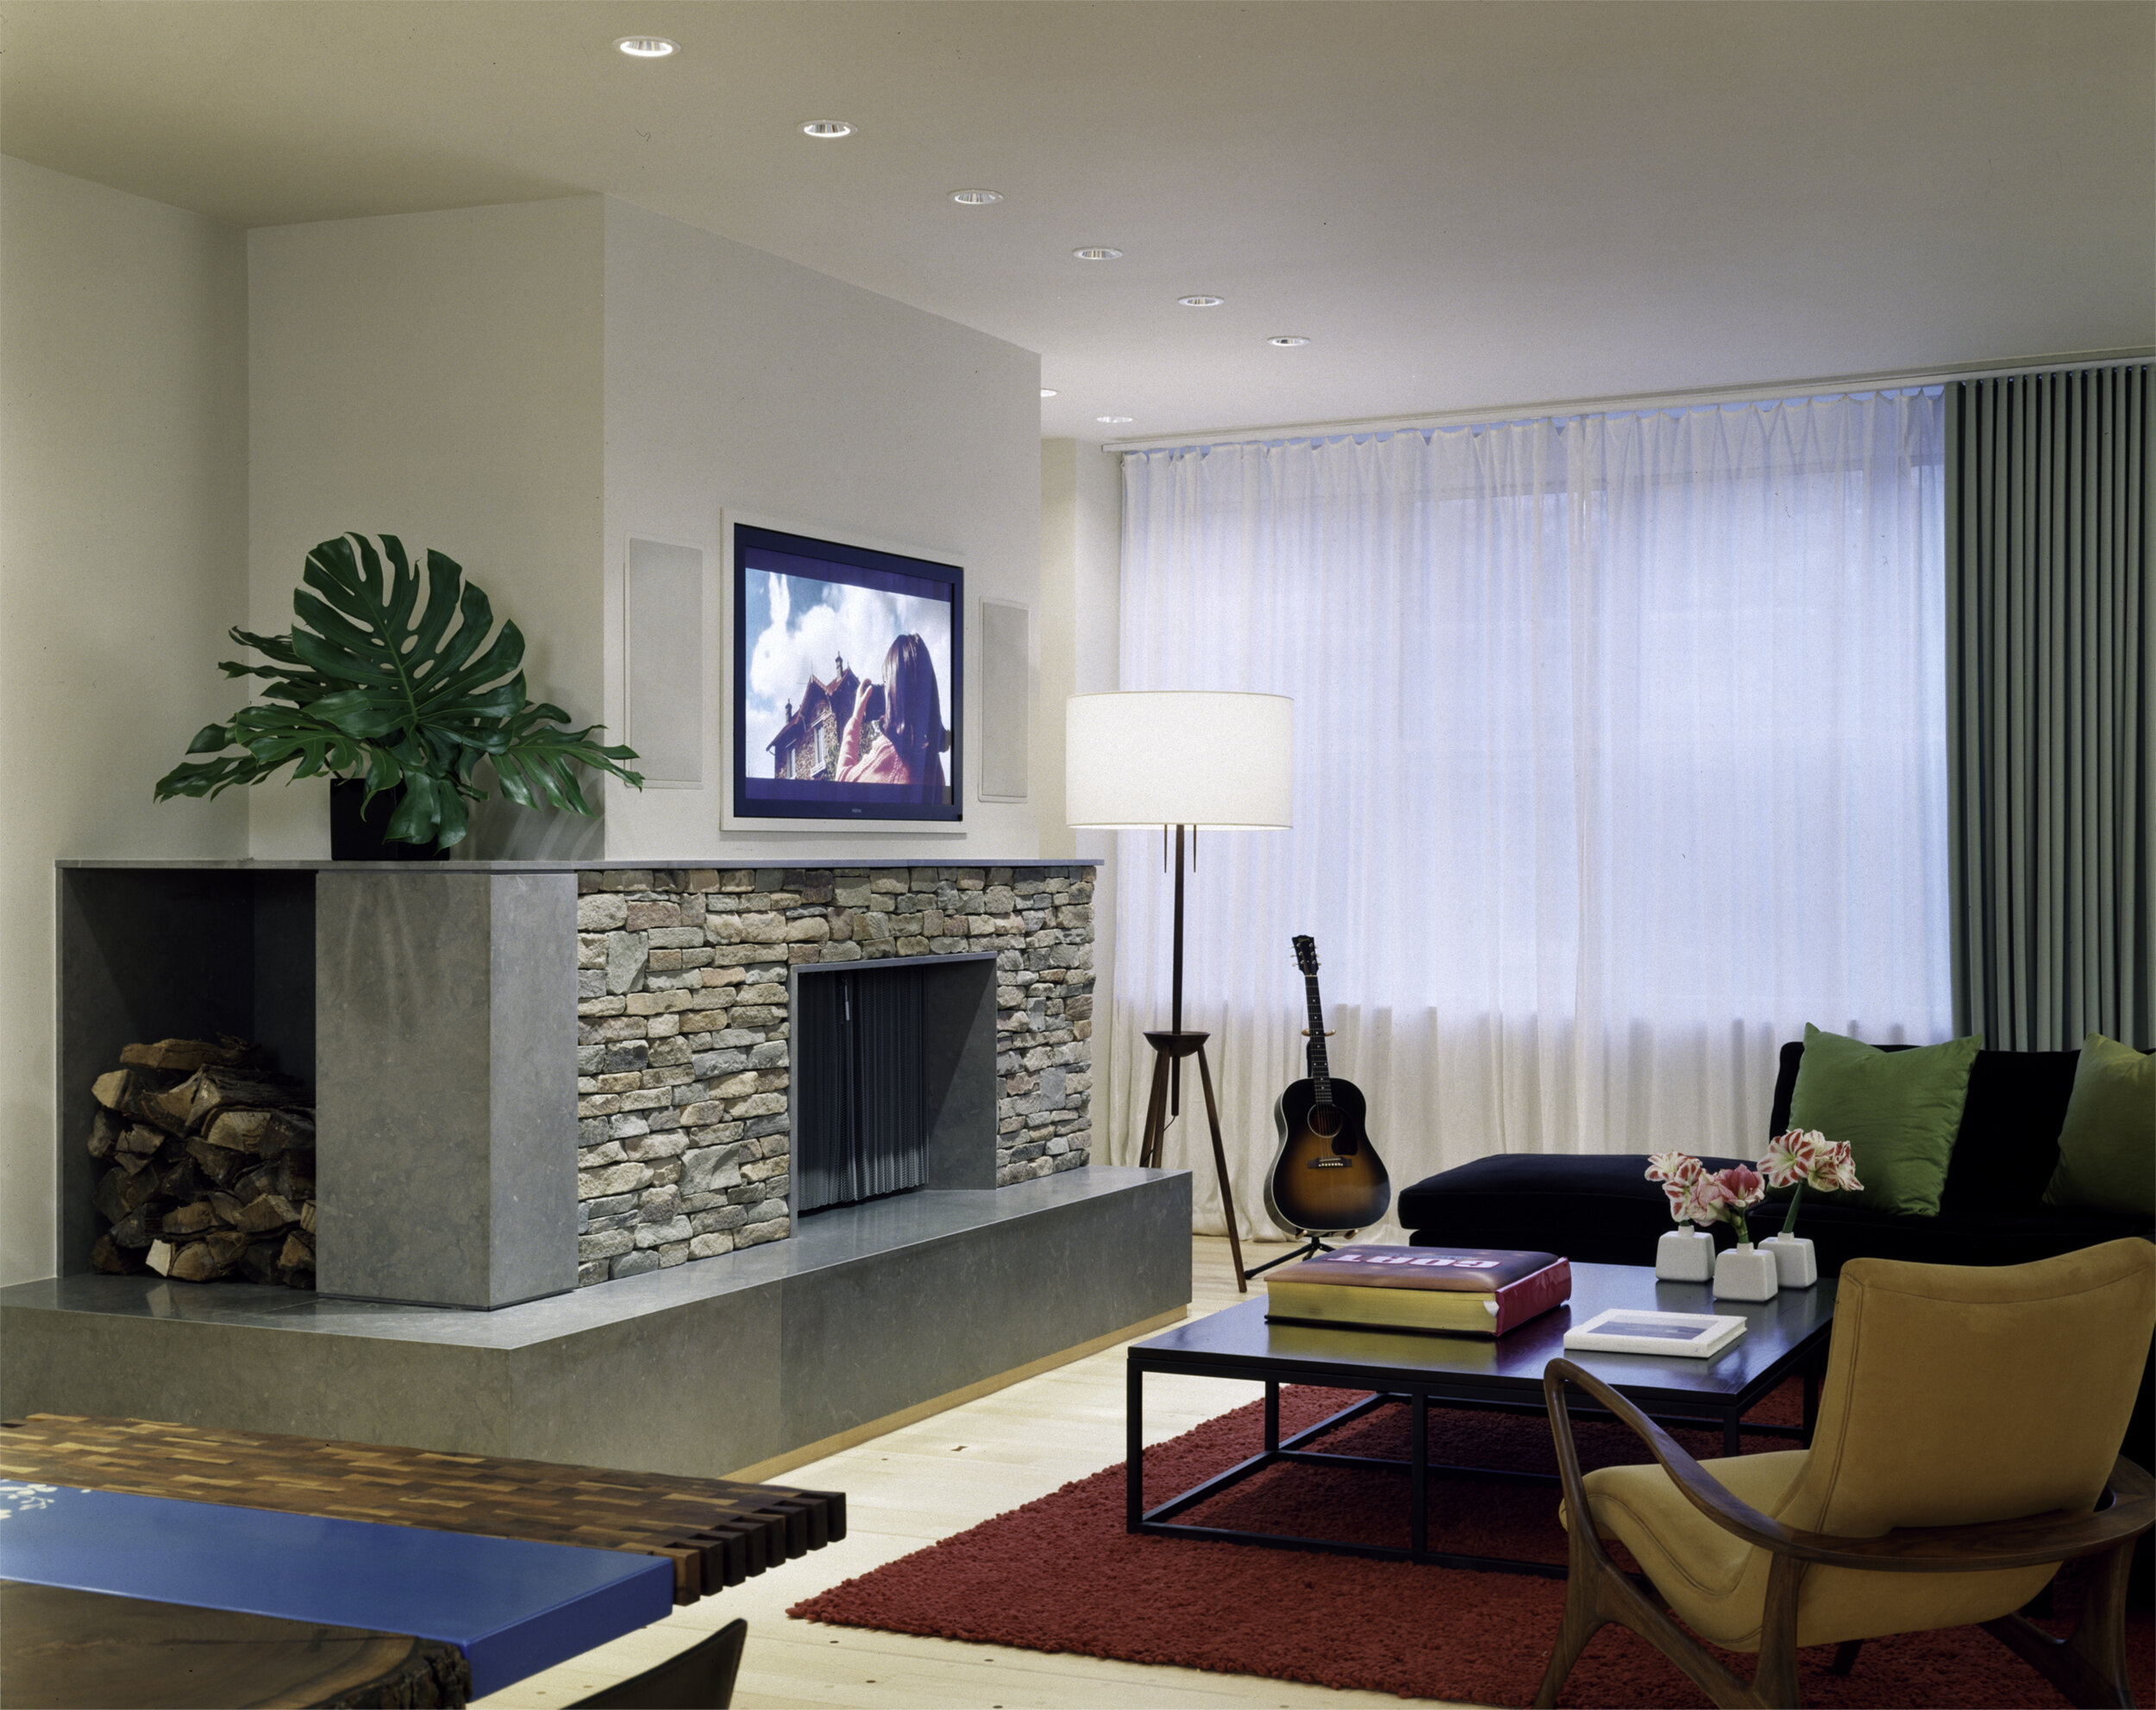 Perlman 4 - Living room.jpg